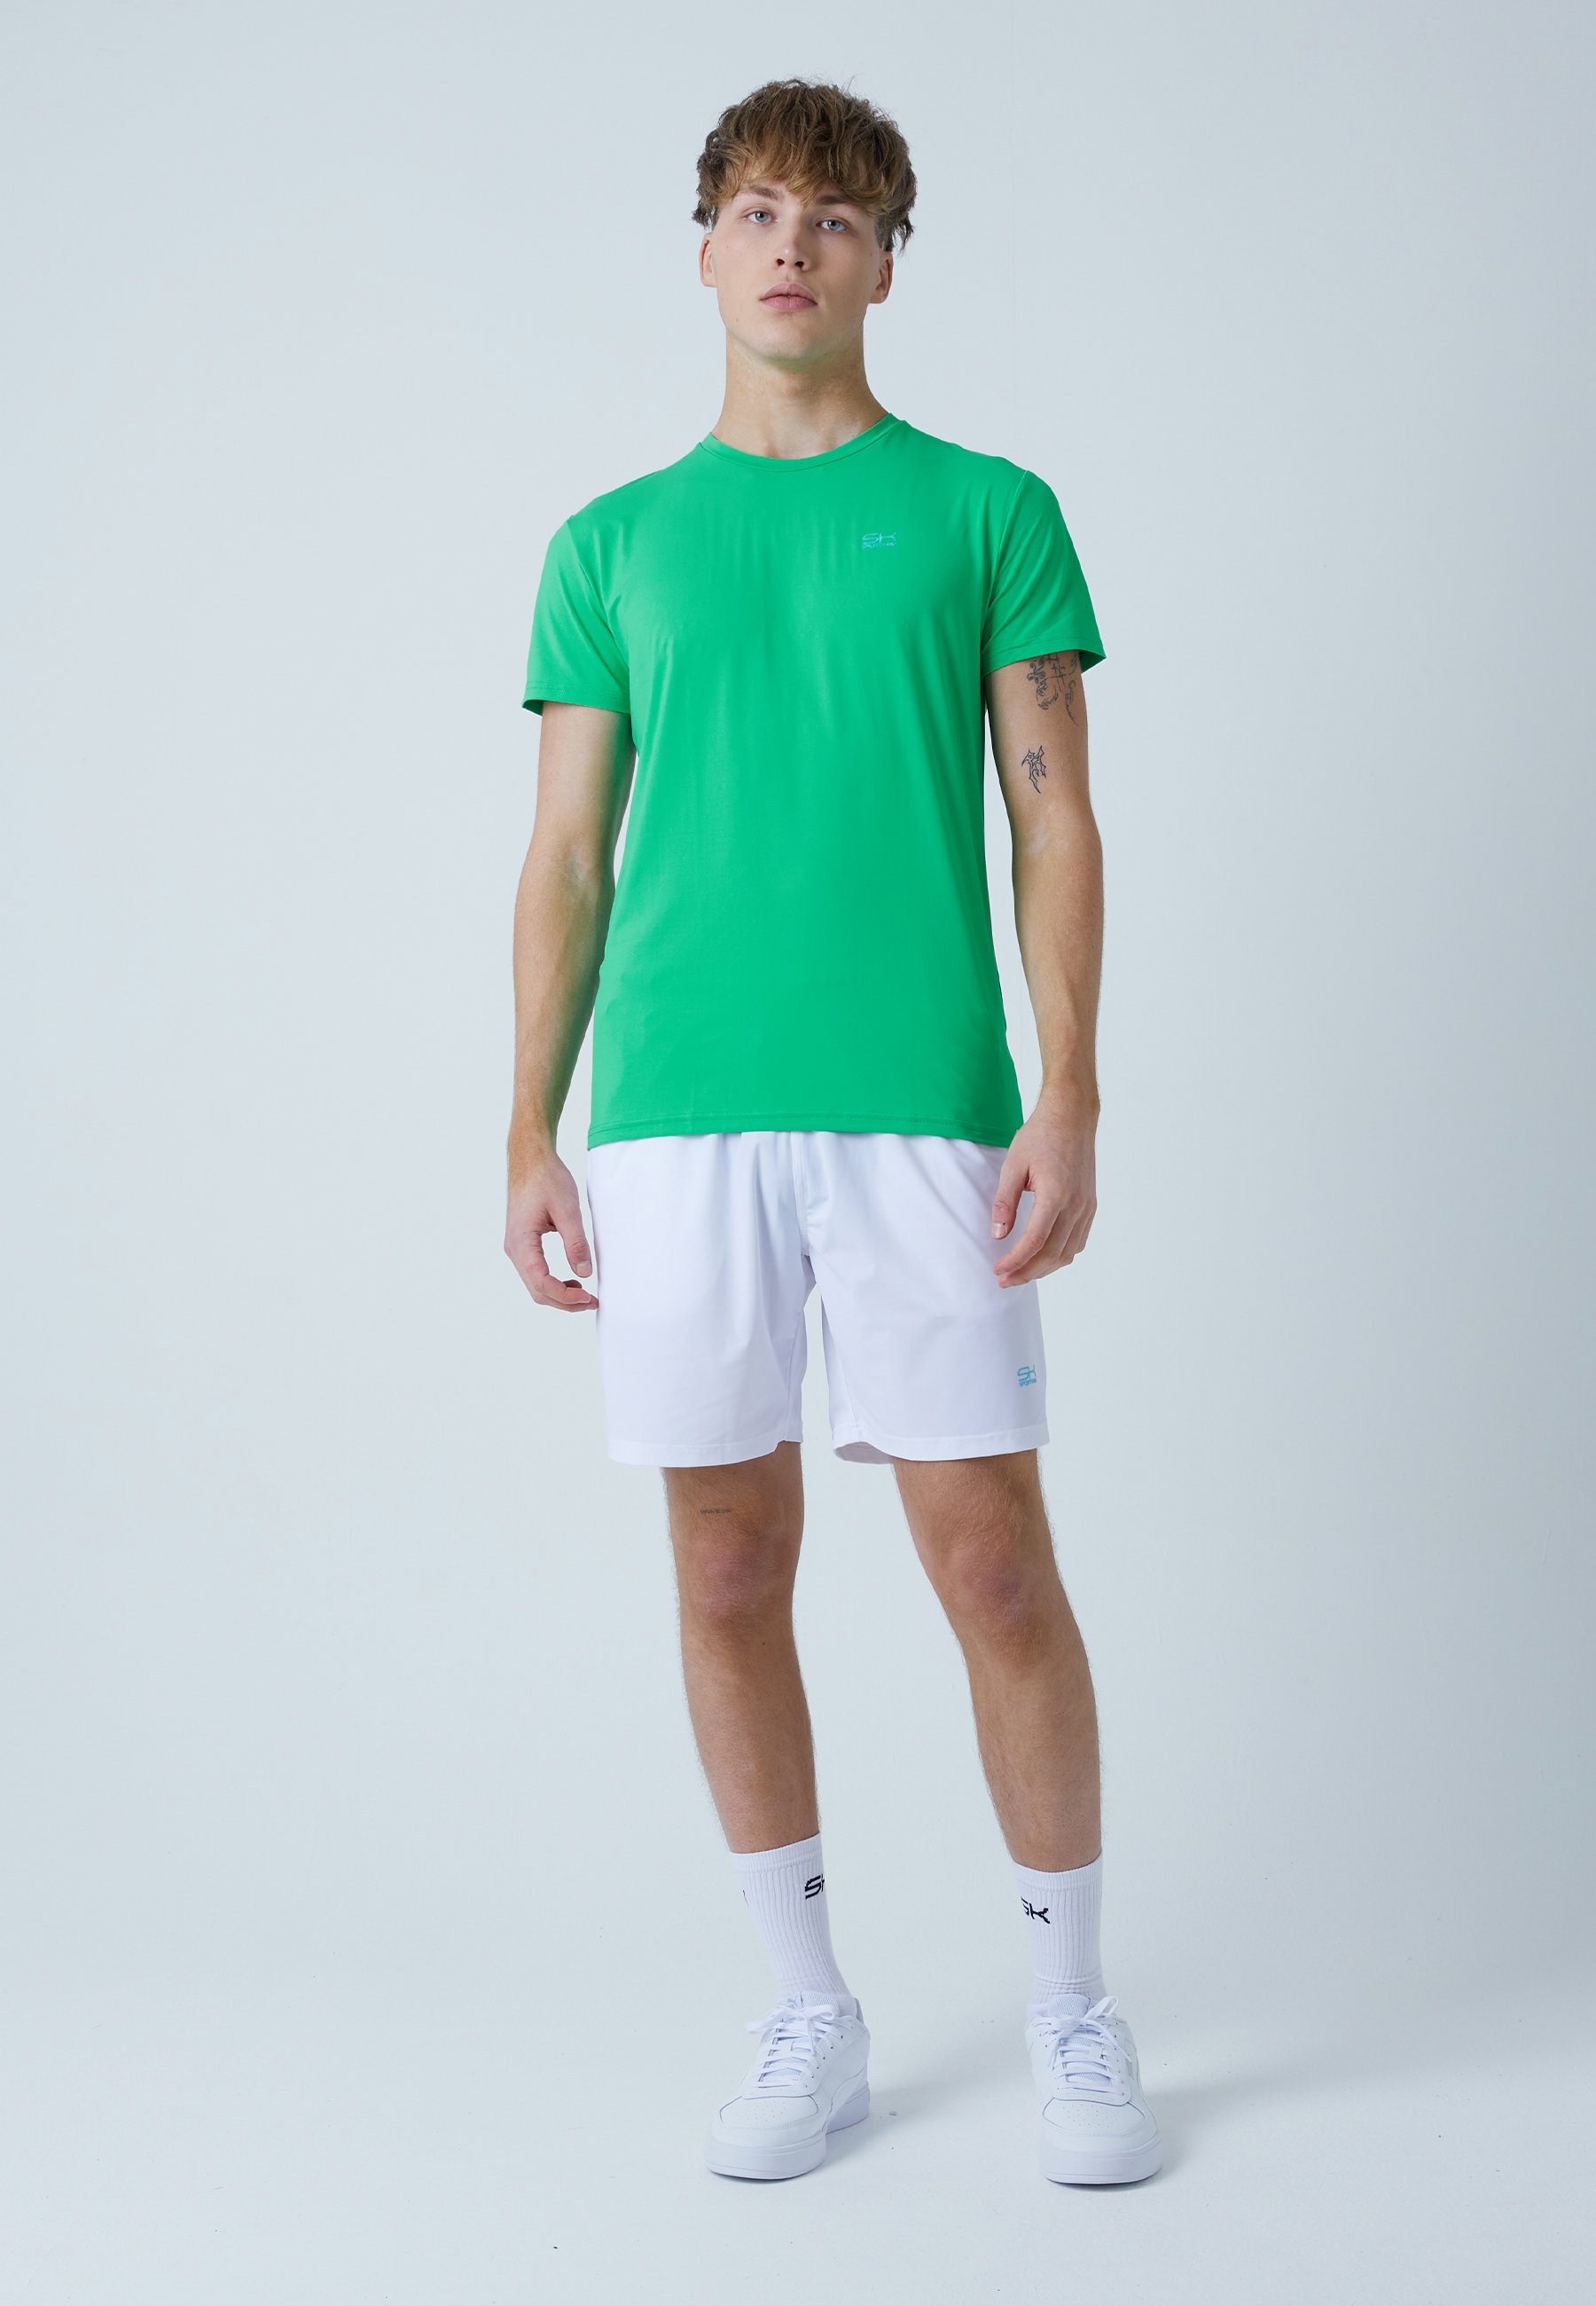 SPORTKIND Funktionsshirt Tennis T-Shirt Rundhals Herren & Jungen grün